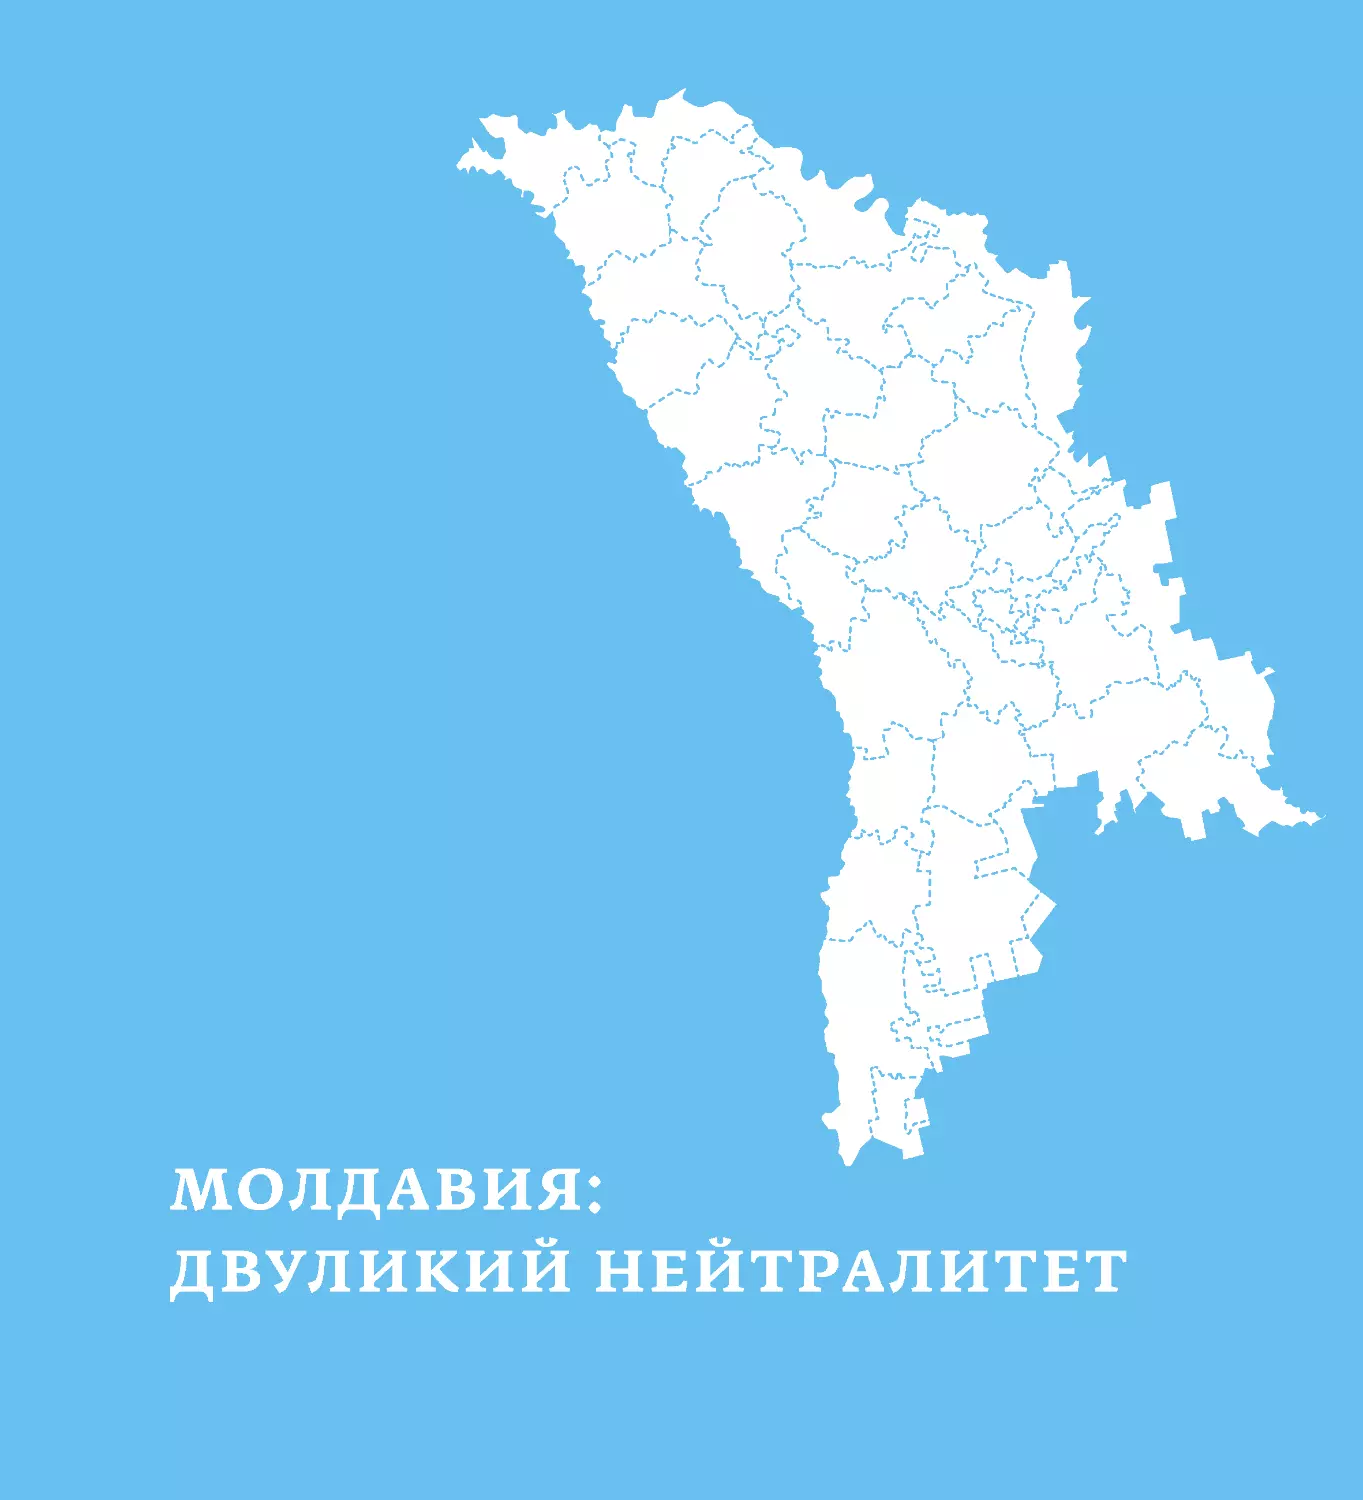 Молдавия: двуликий нейтралитет